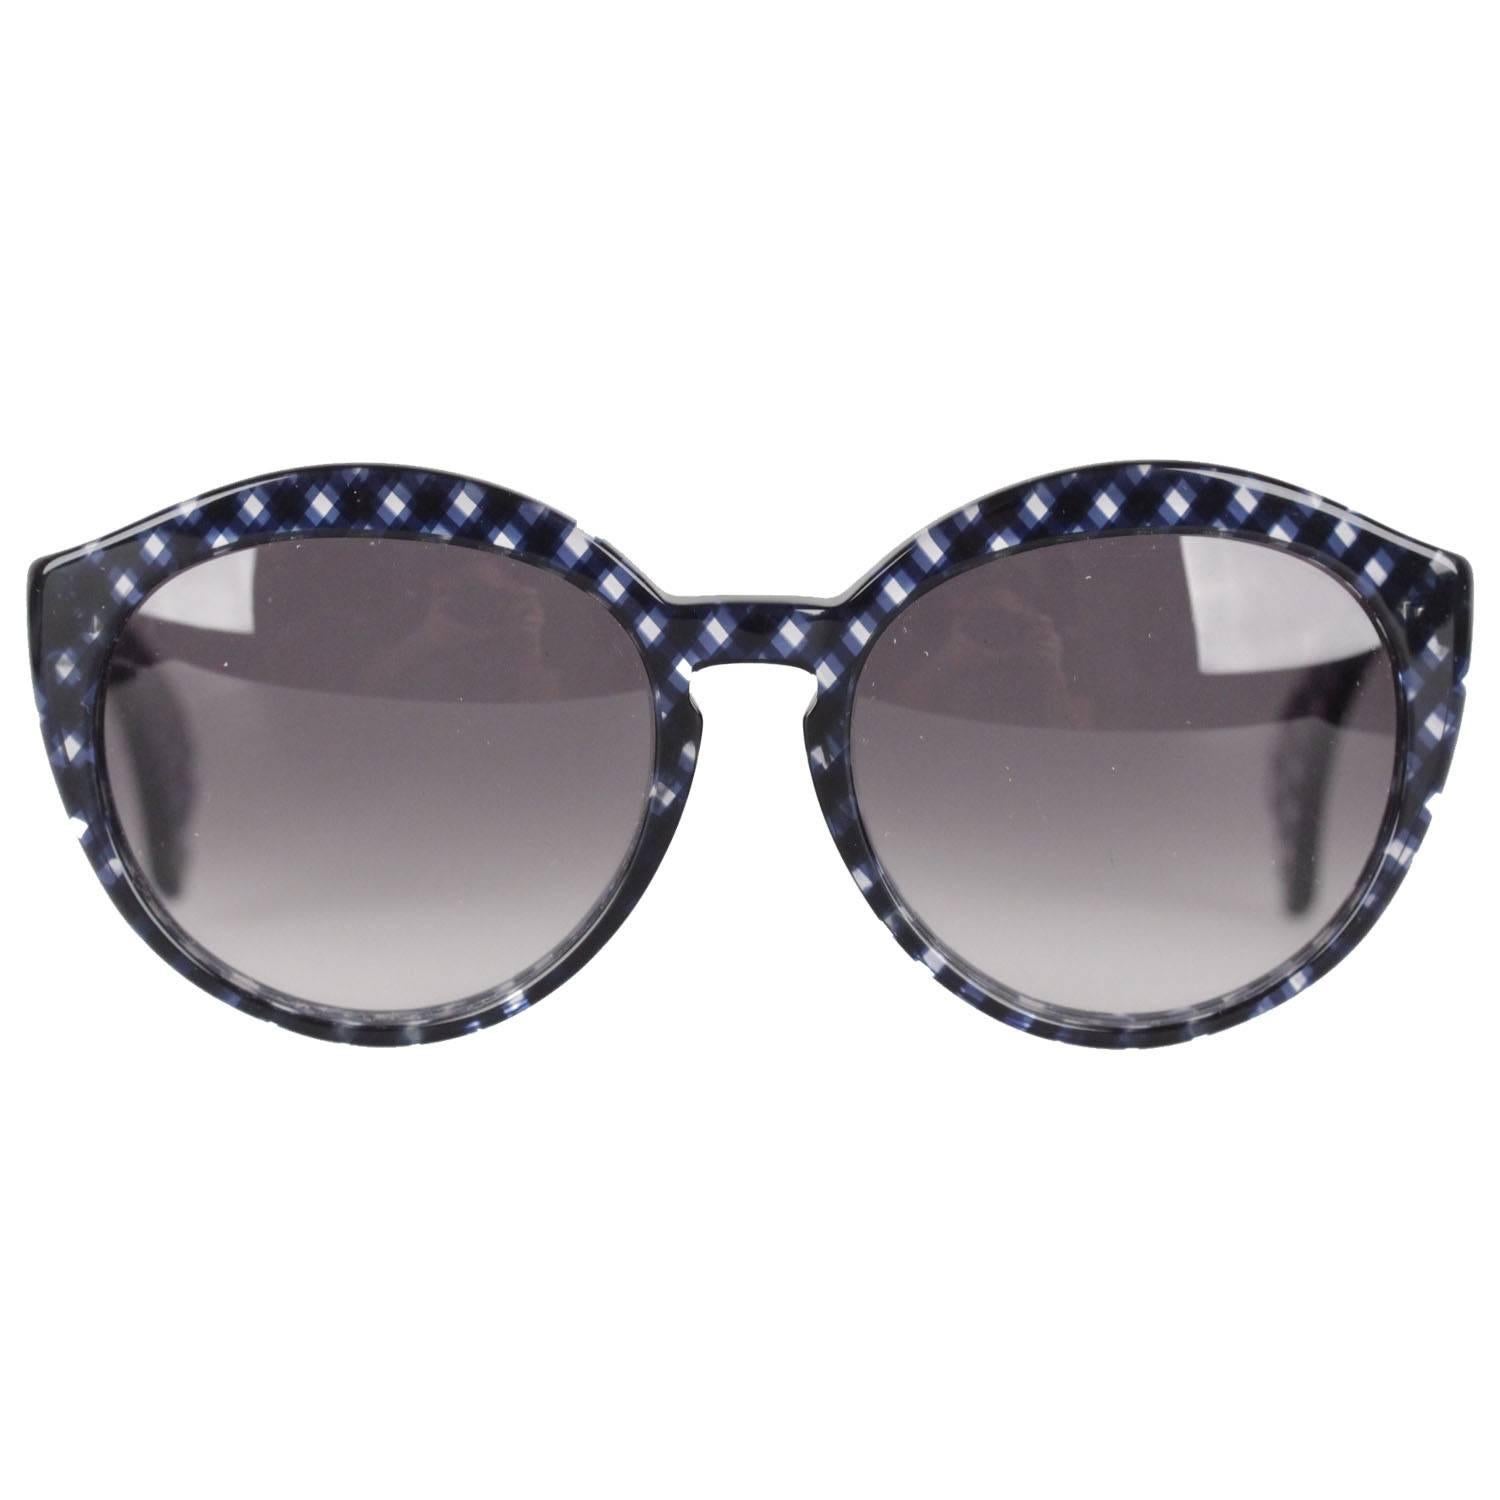 BOTTEGA VENETA checkered Round MINT Sunglasses BV 195/S 56/19 130